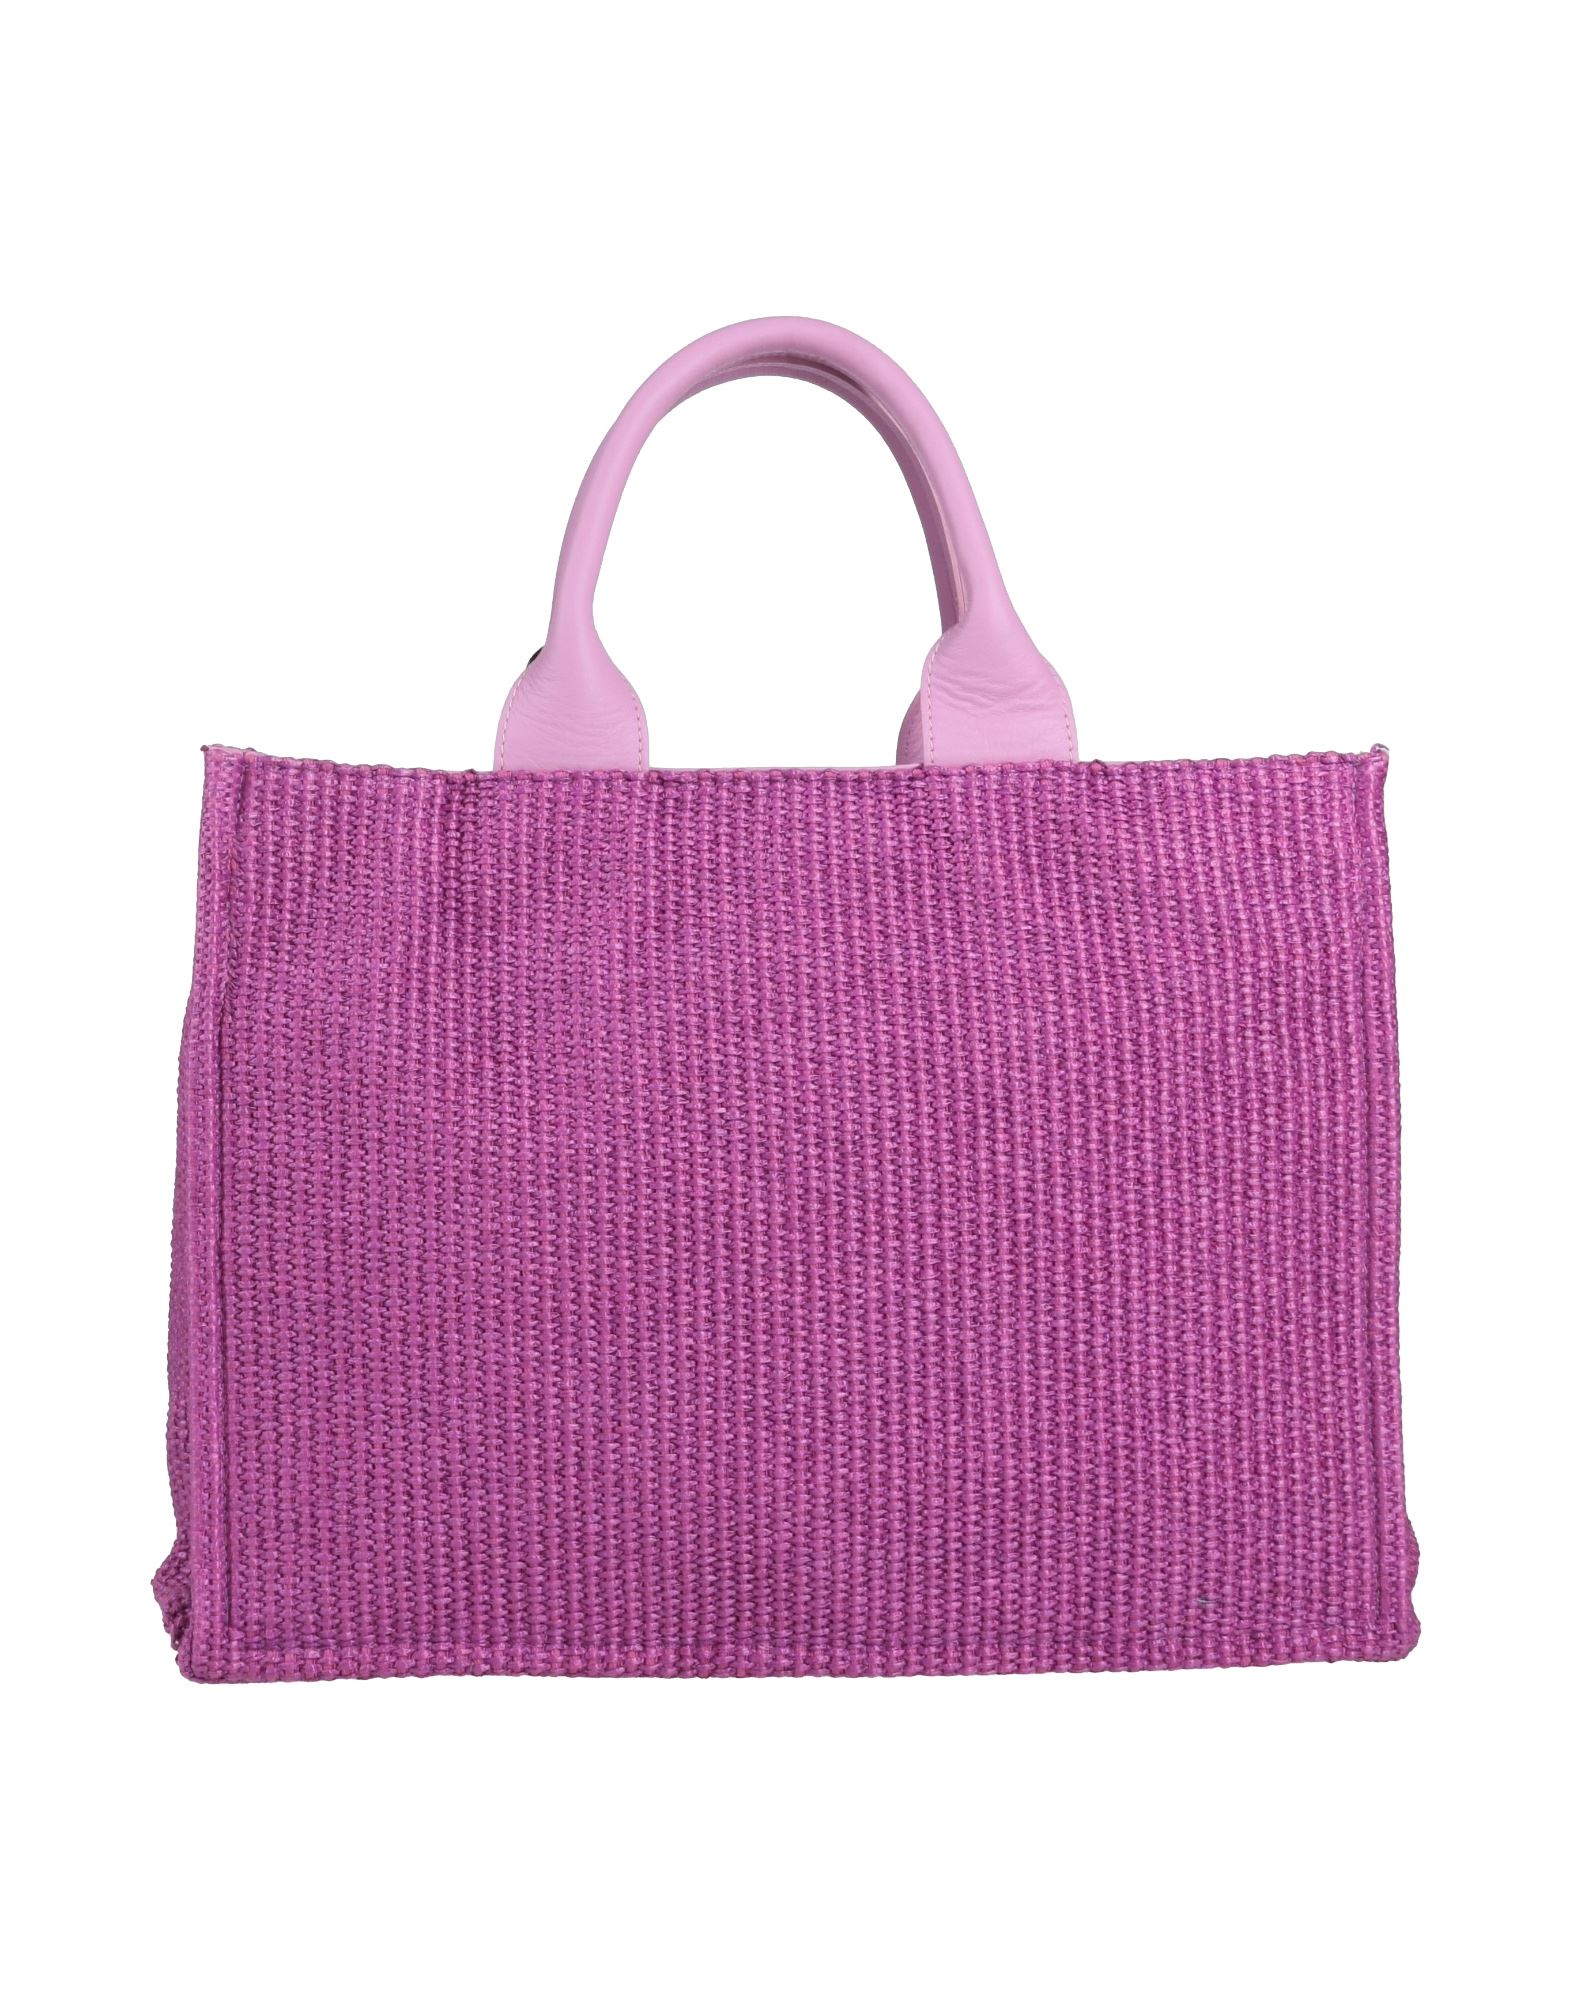 My-best Bags Handbags In Purple